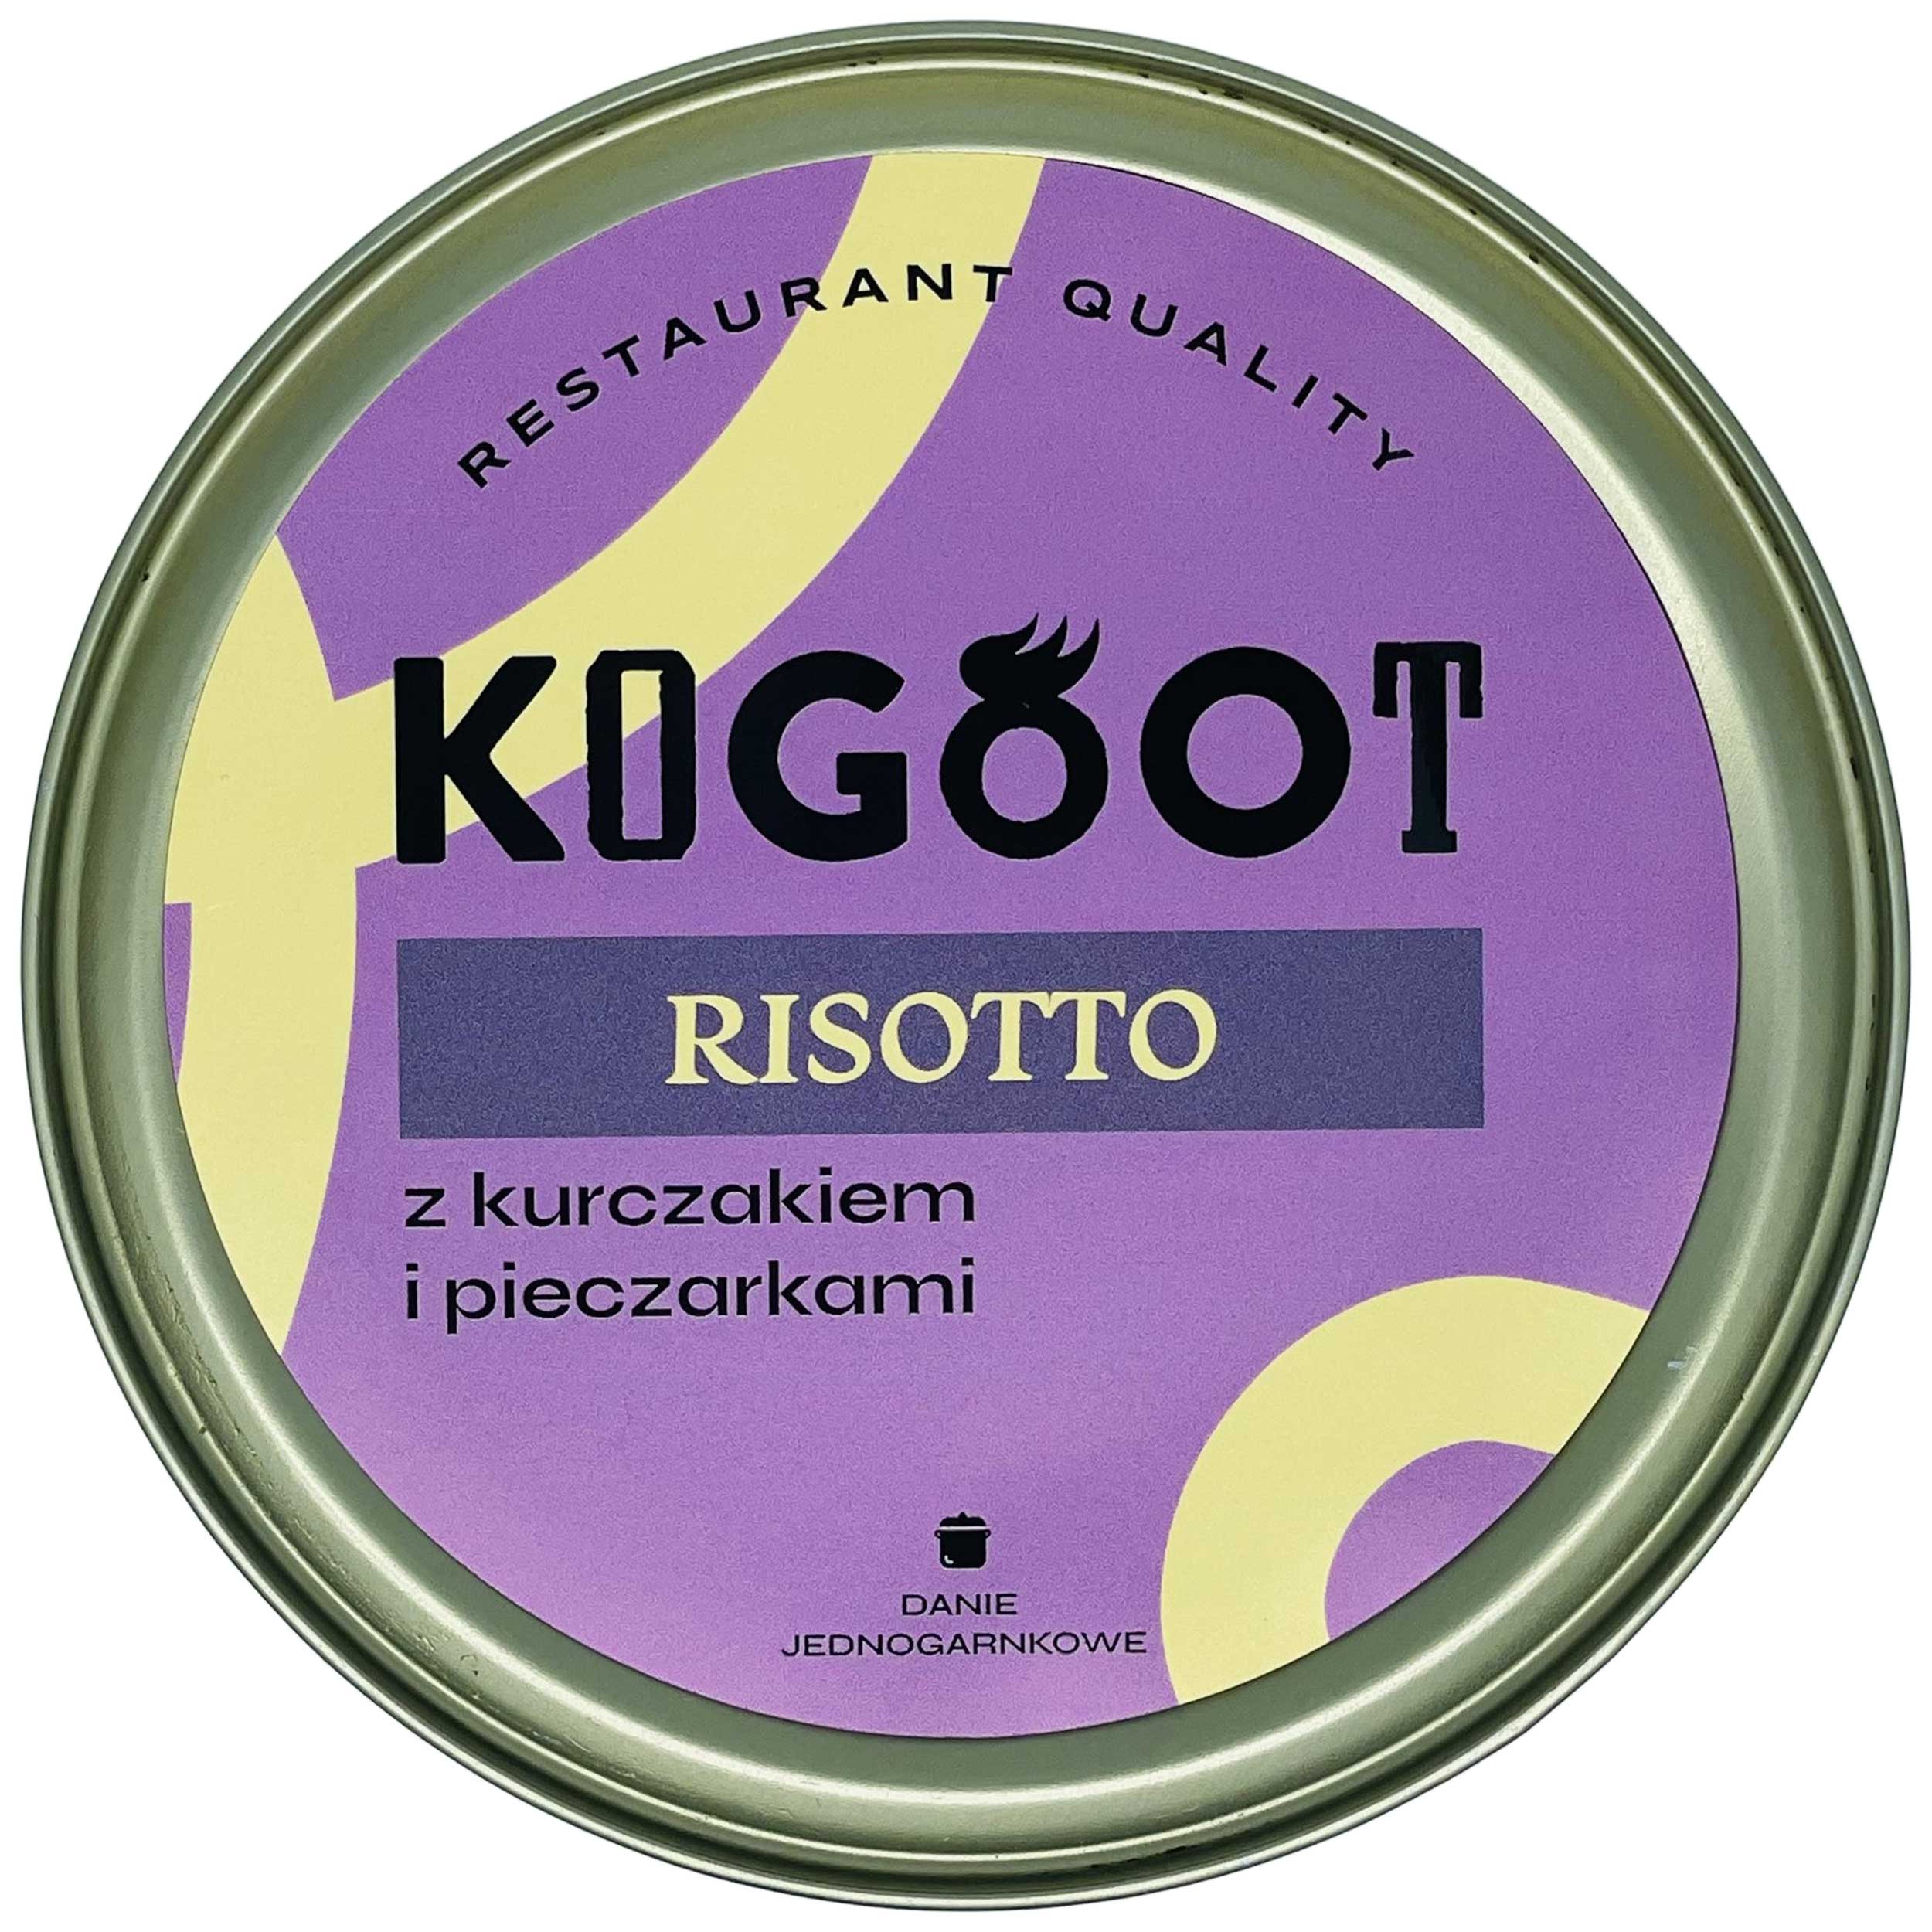 Консервовані продукти Kogoot - Різотто з куркою та грибами 500 г